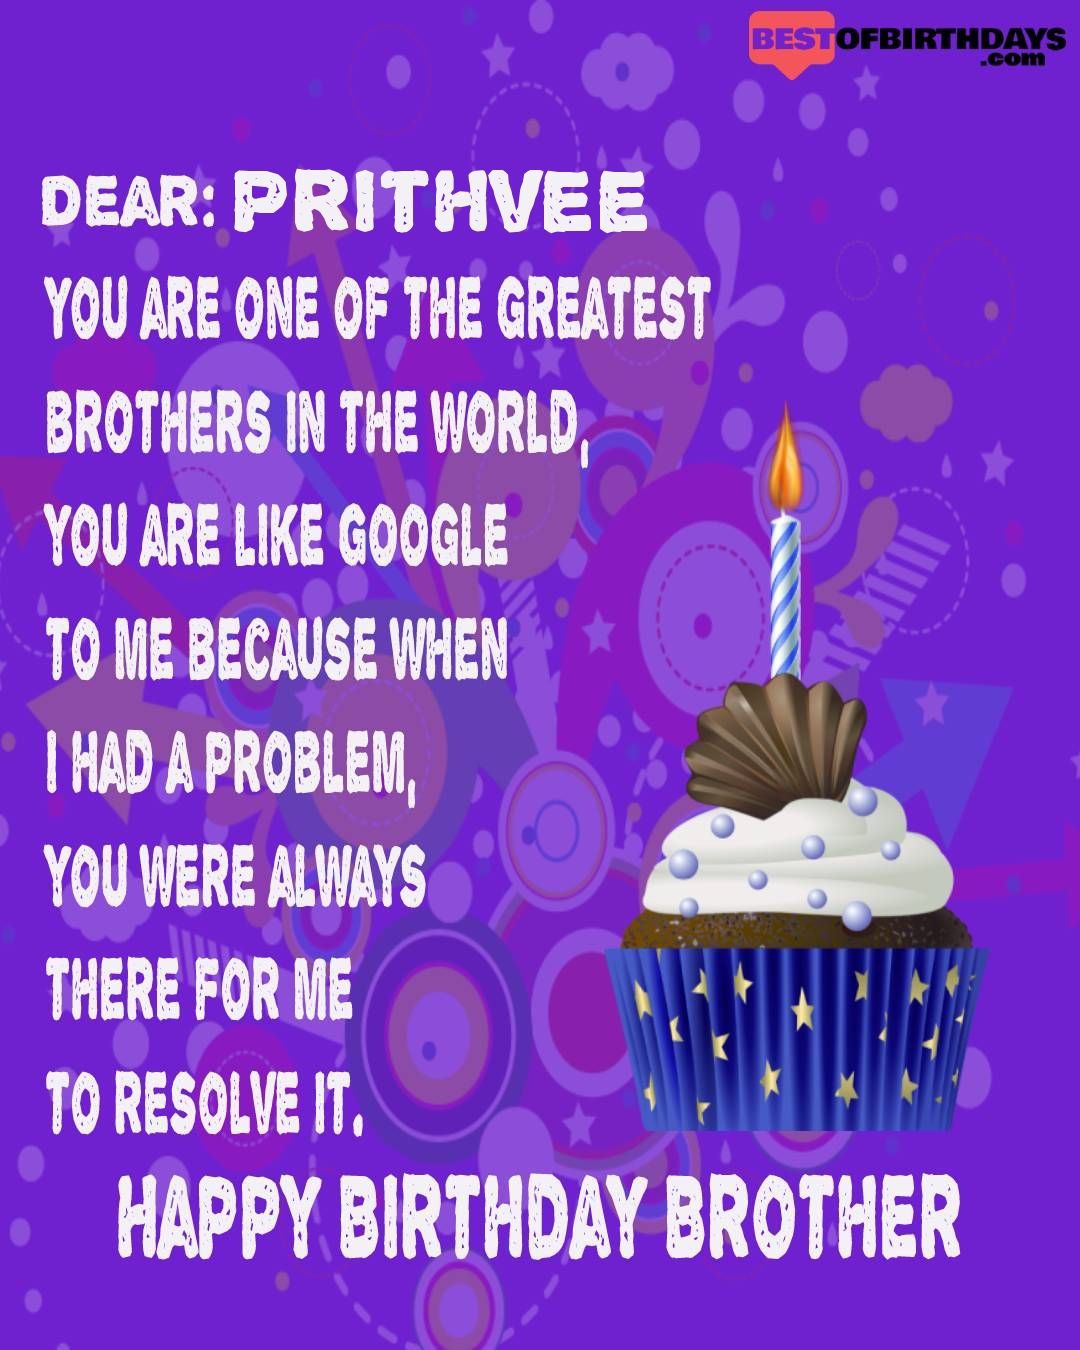 Happy birthday prithvee bhai brother bro